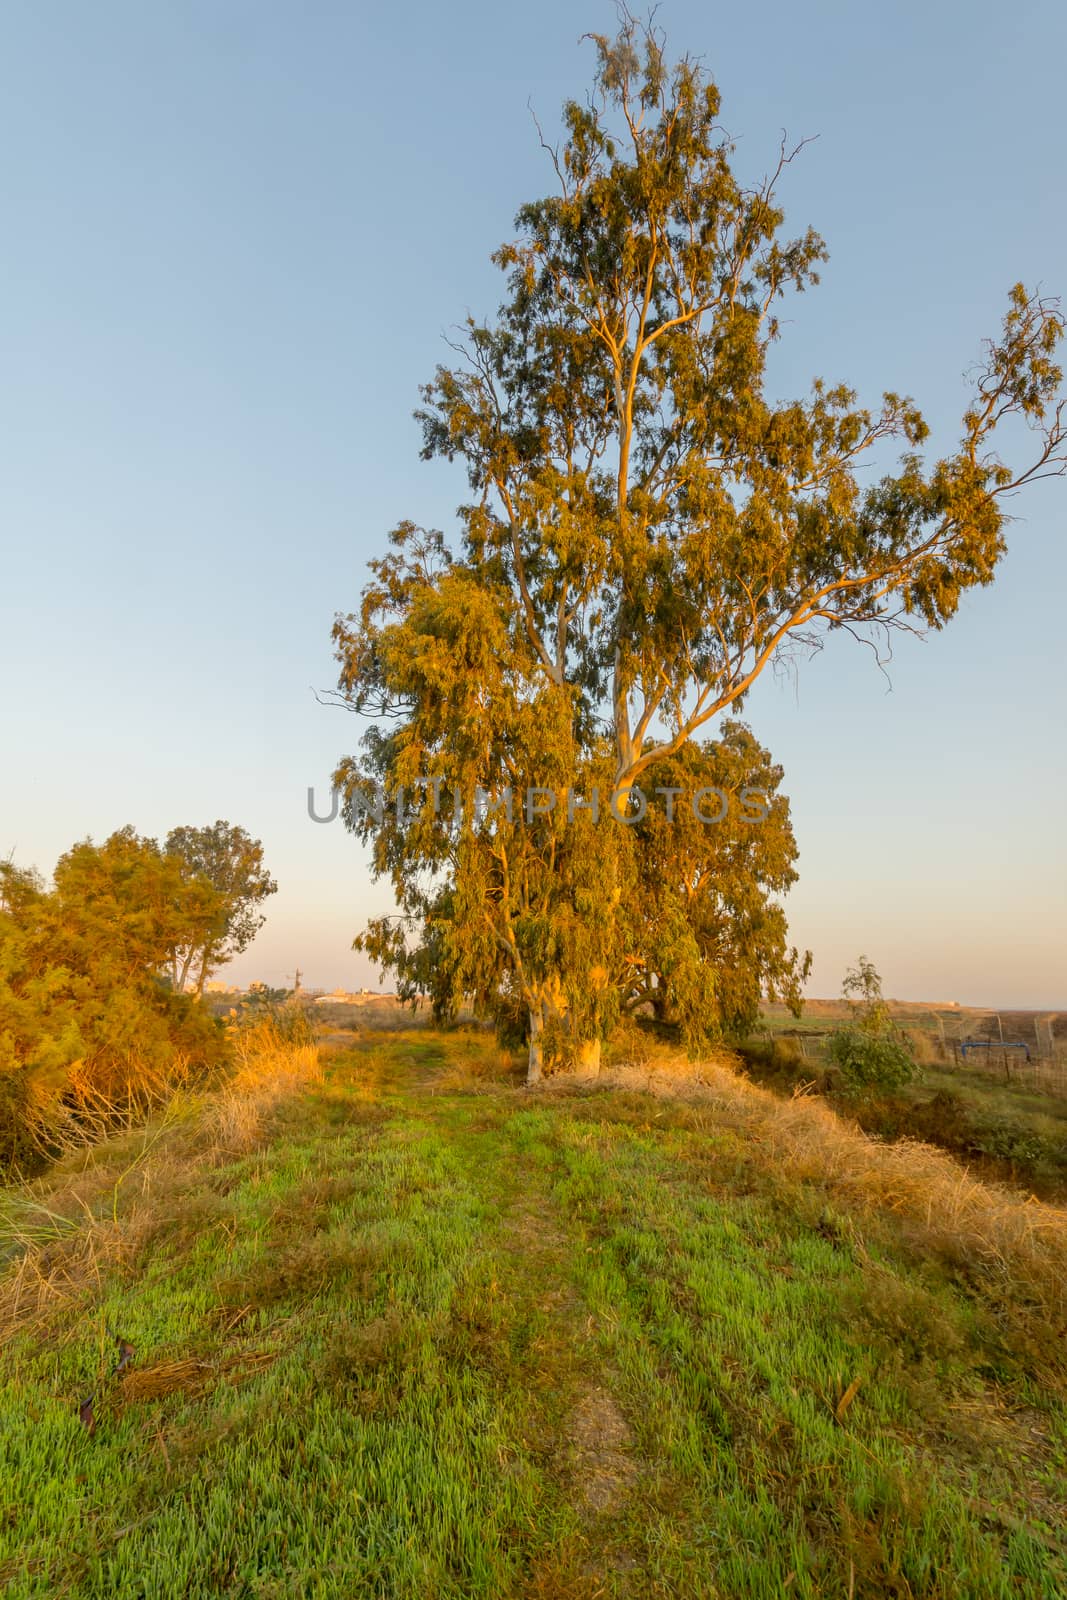 Sunrise view of a Eucalyptus tree, in En Afek nature reserve, northern Israel